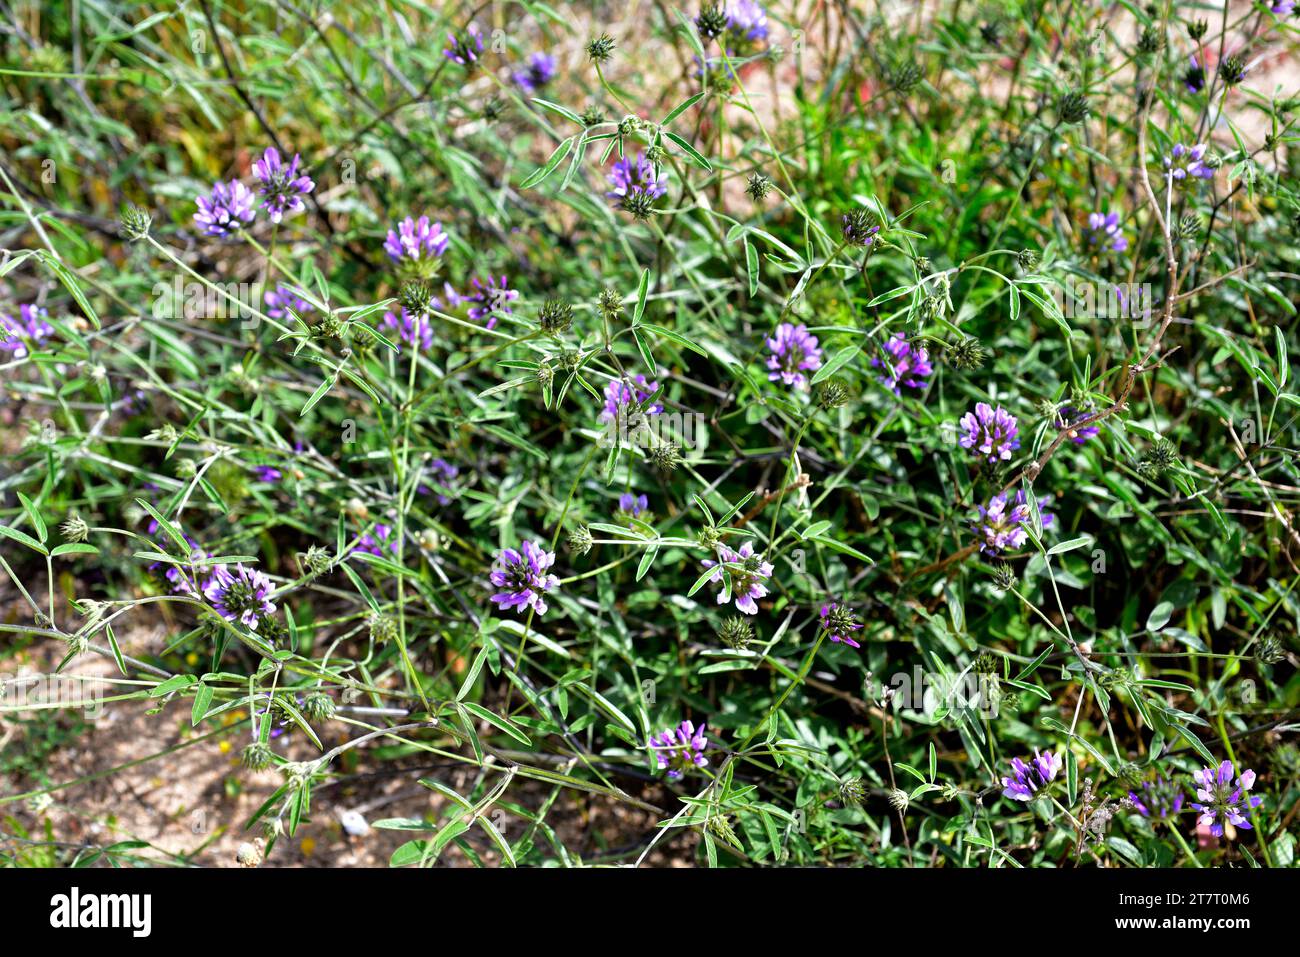 Il pisello arabo (Bituminaria bituminosa o Psoralea bituminosa) è un'erba perenne originaria del bacino del Mediterraneo e delle Isole Canarie. THI Foto Stock